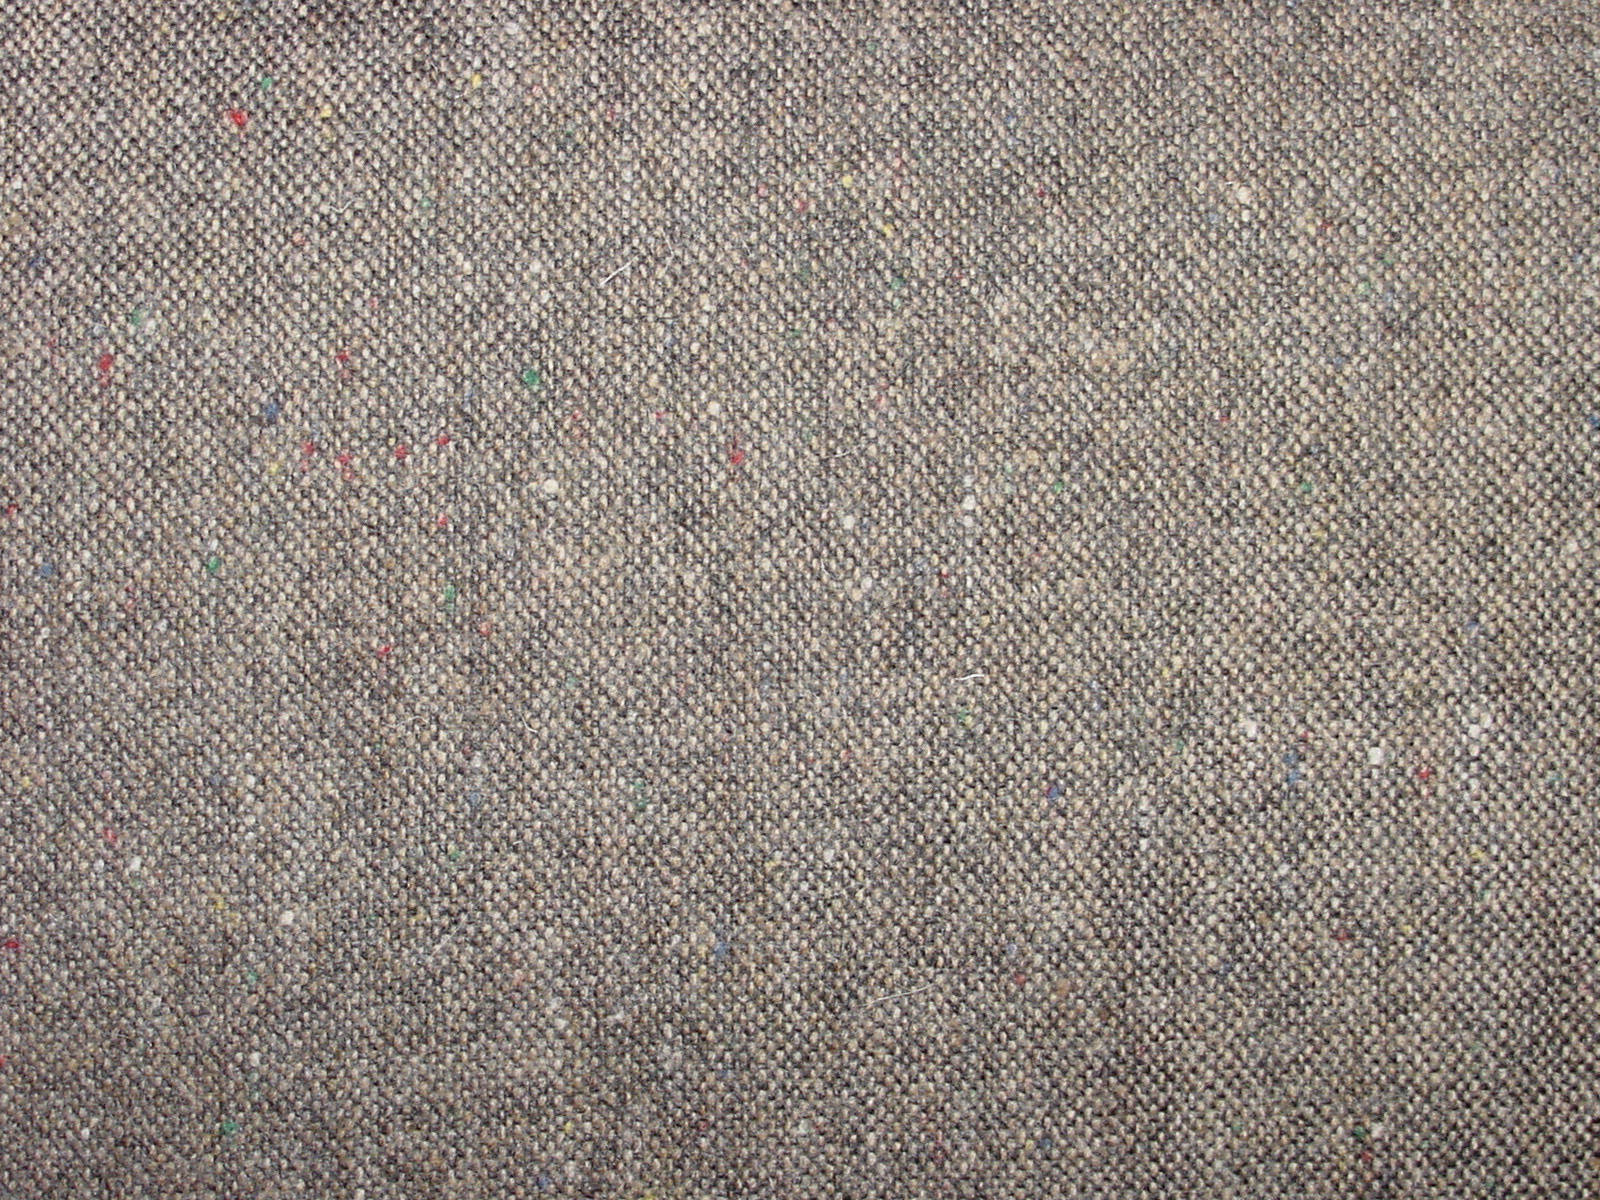 Wool Fabric Background Twenty-nine | Photo Texture & Background